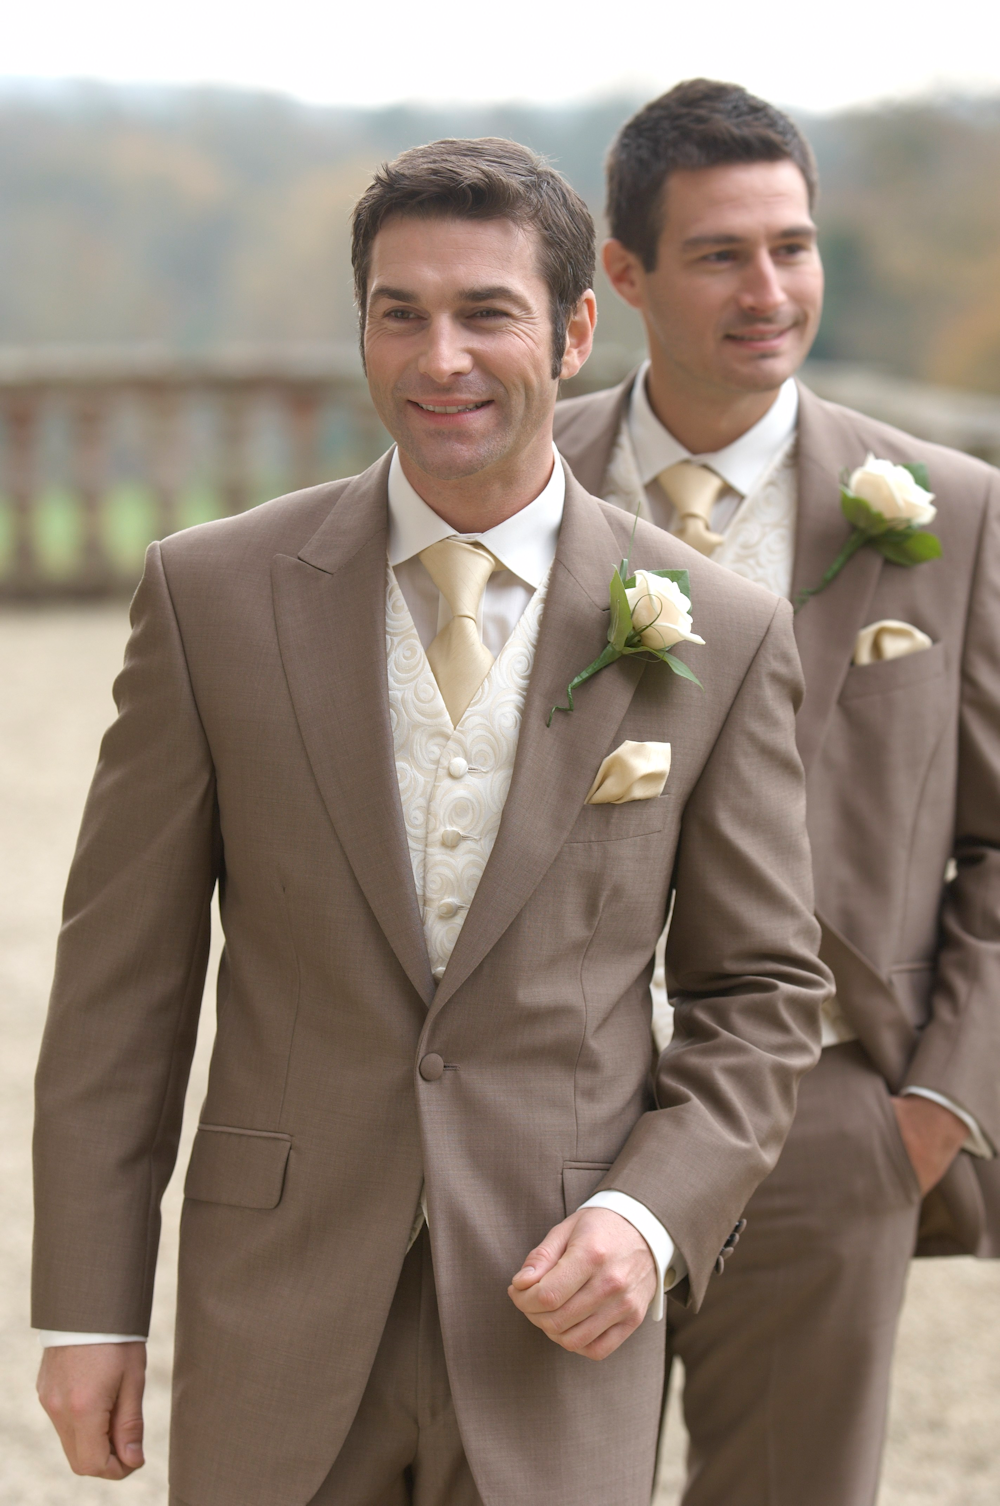 Wedding Suit Hire, Mens Suit Hire, Formal Suit Hire, South Wales